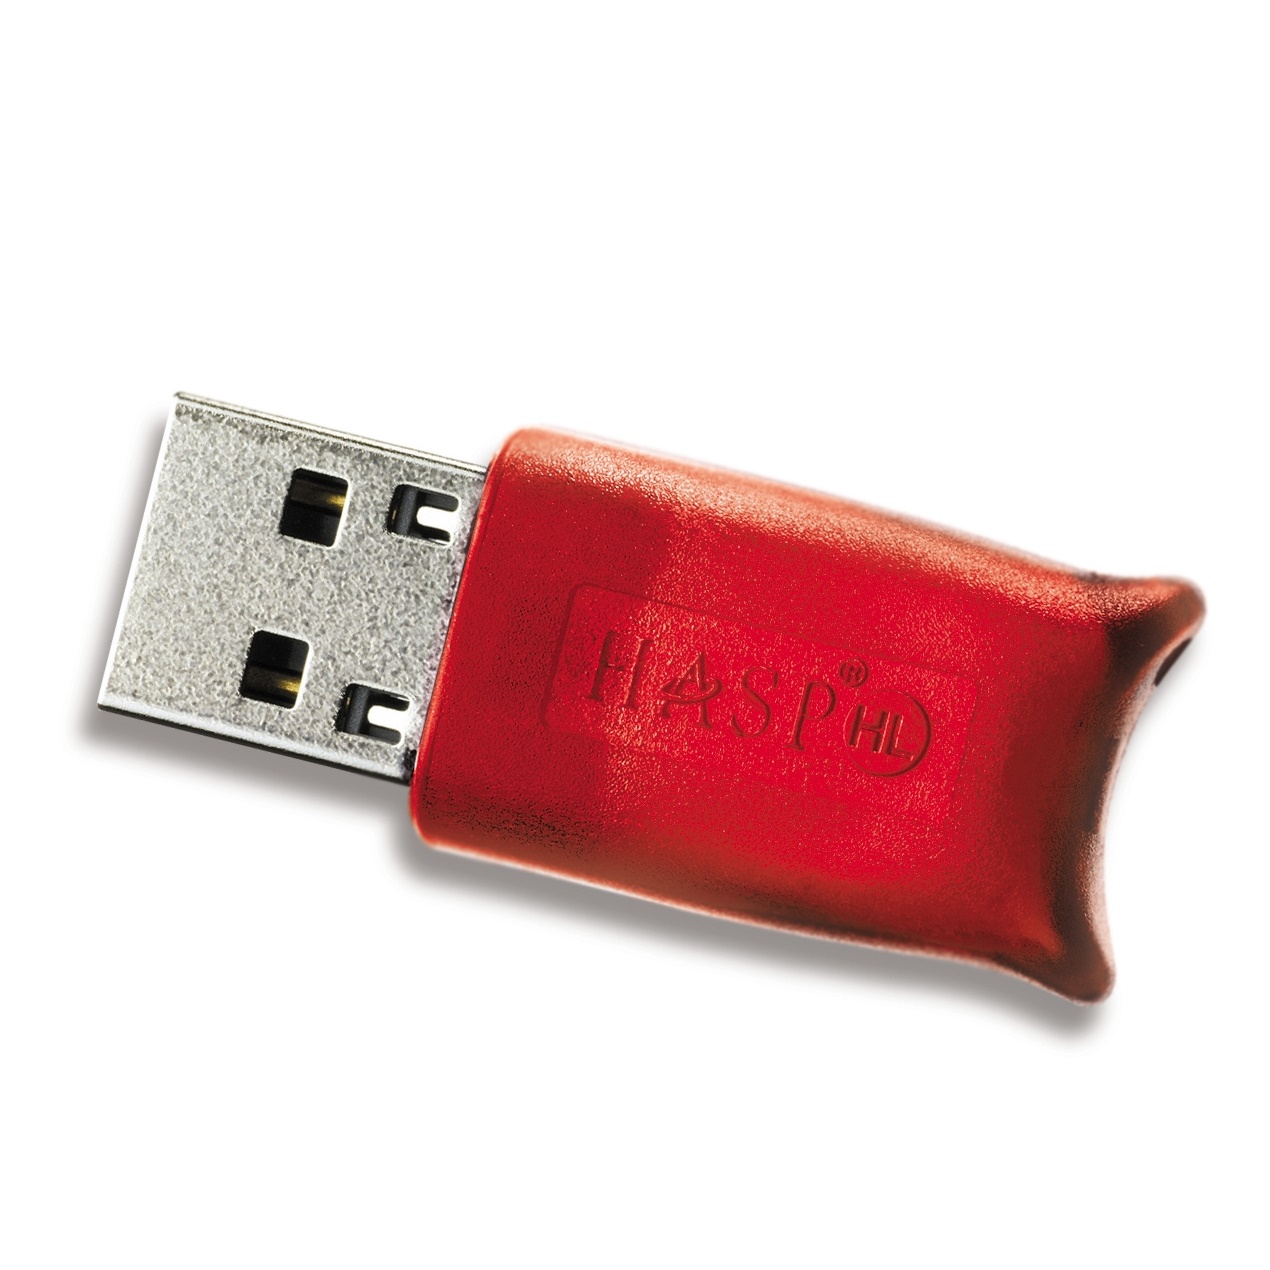 Не виден ключ 1с. Hasp USB 1c. Лицензия 1с USB. Hasp hl Pro orgl8 фиолетовый. USB ключ 1с.